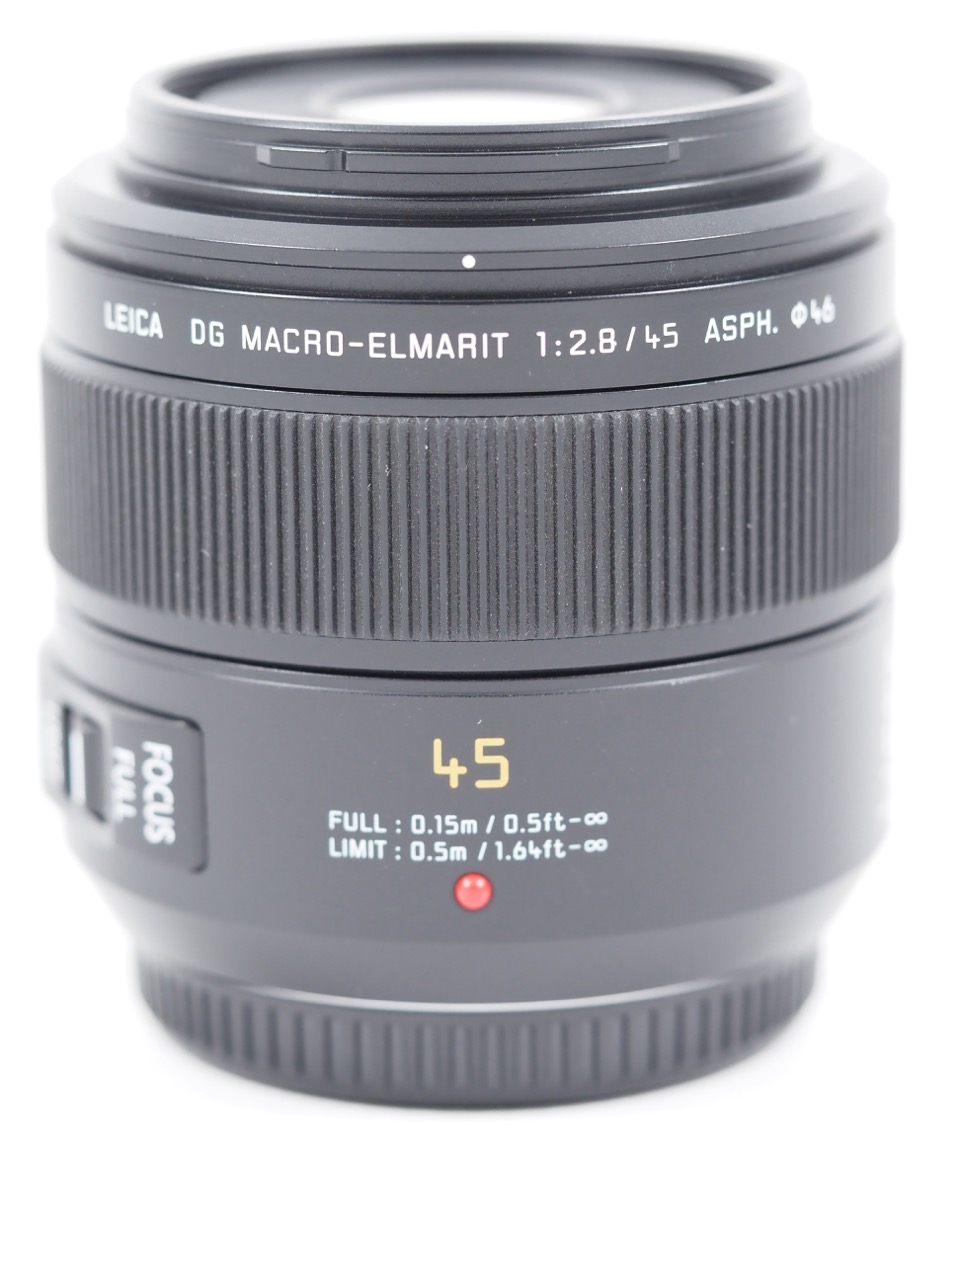 Panasonic Leica DG Macro-Elmarit 45mm F2.8 ASPH. OIS – MFT-Mount